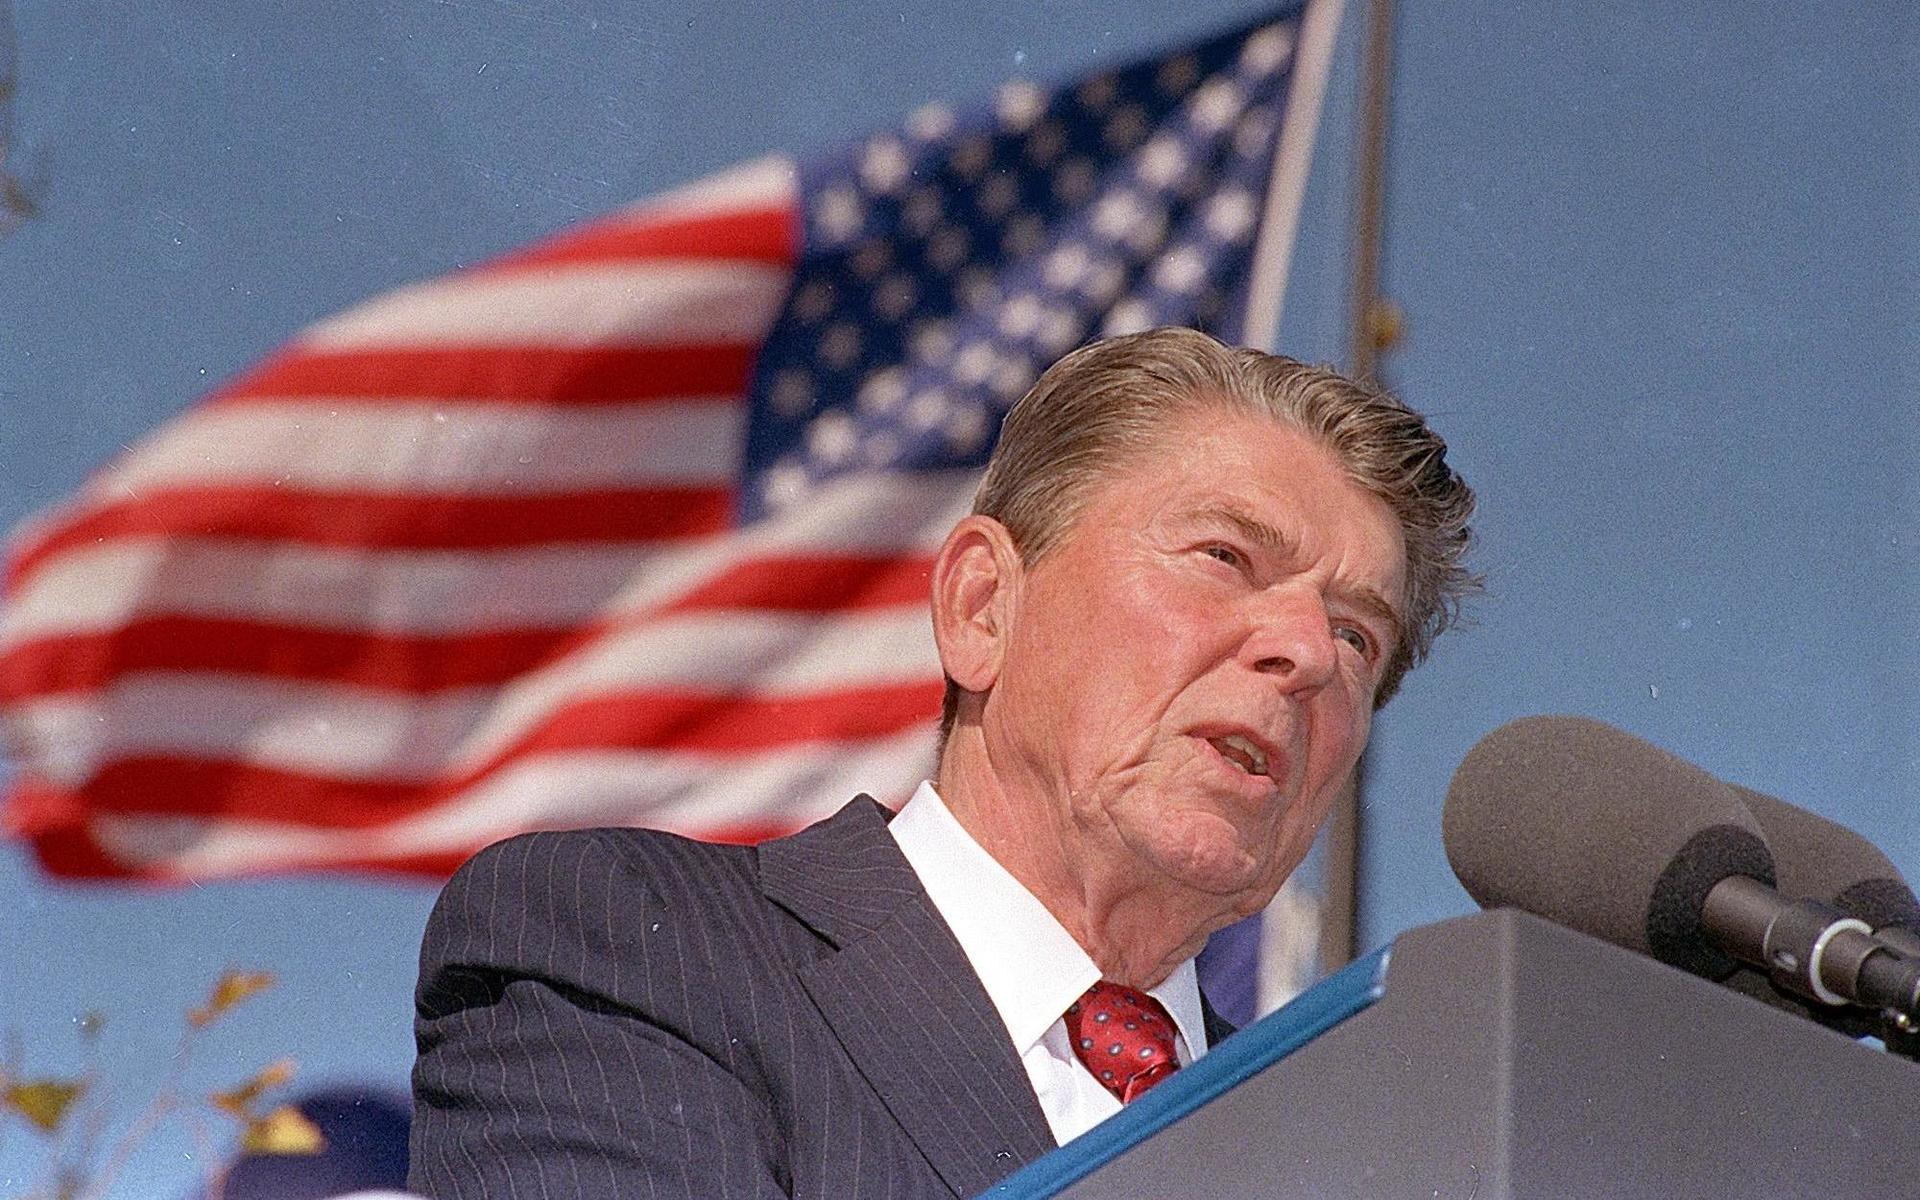 Ronald Reagan sköts 1981 och blev allvarligt skadad. Men det var först efter att han avgått som president som det framkom att han led av Alzheimers.